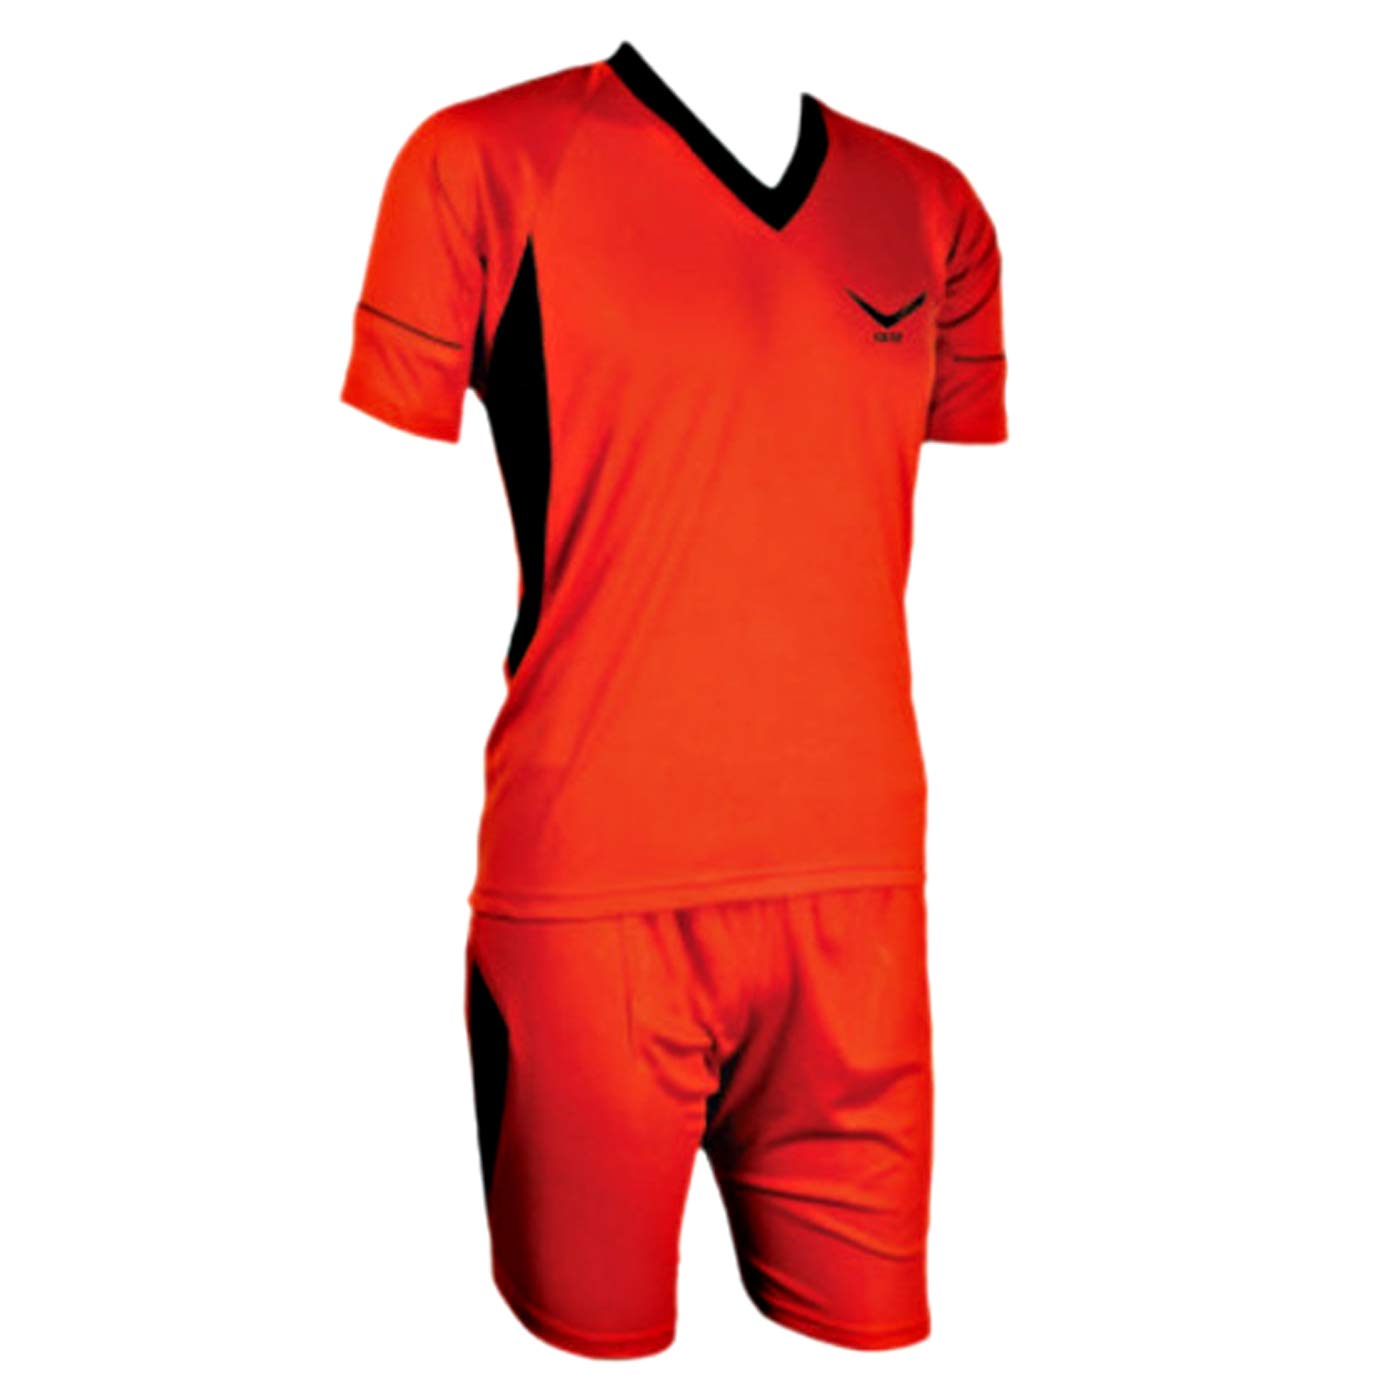 Vicky Soyuz Football Jersey Set, Red - Best Price online Prokicksports.com